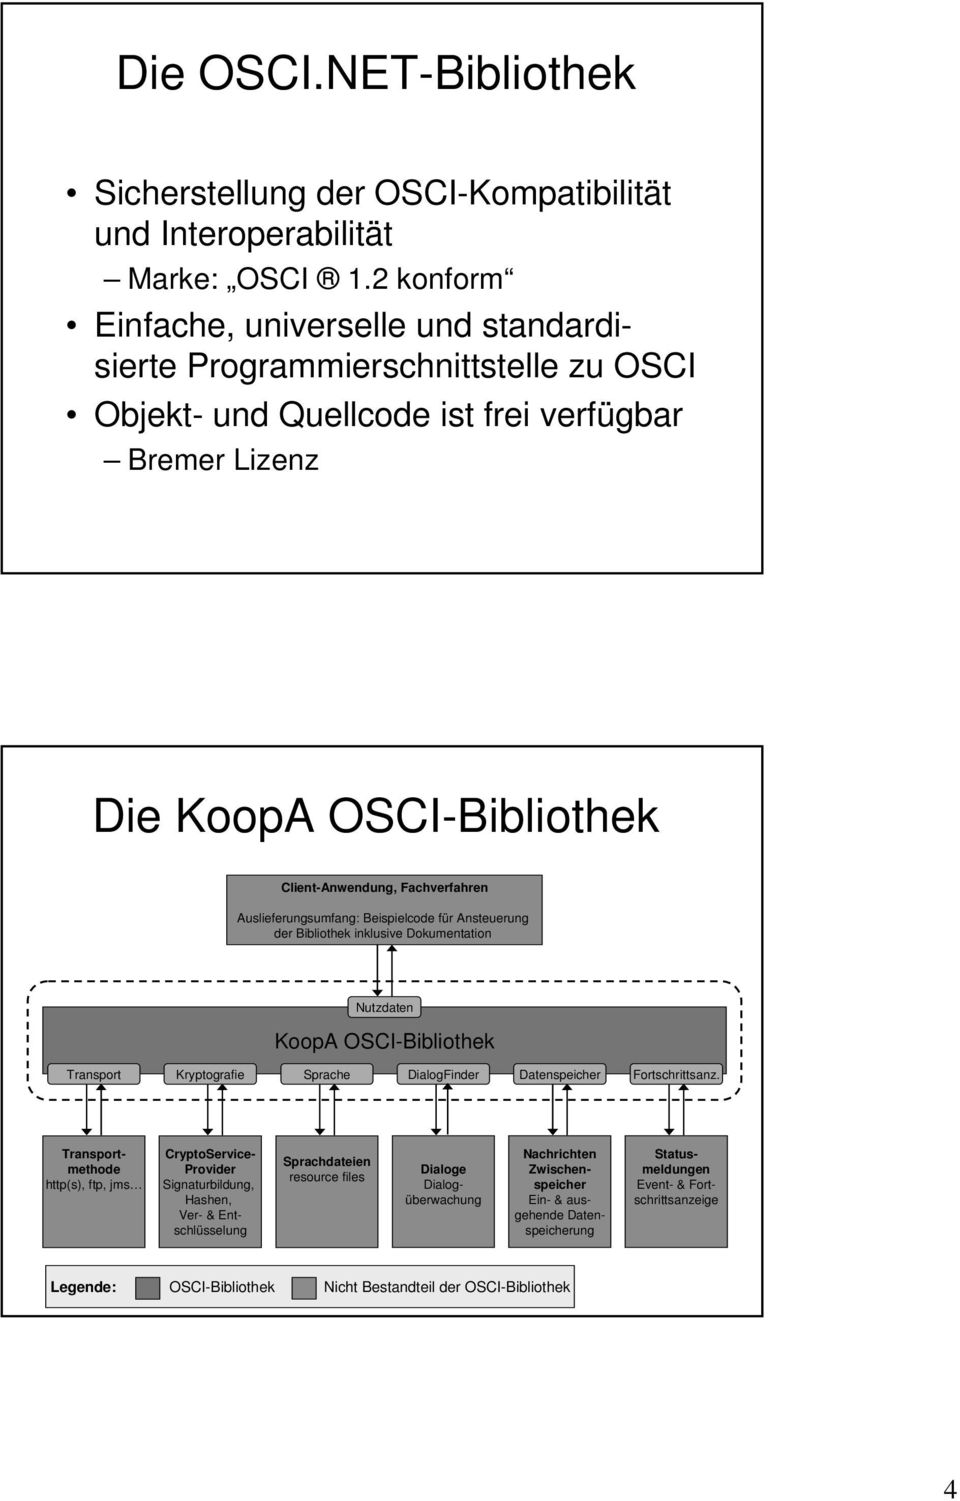 Auslieferungsumfang: Beispielcode für Ansteuerung der Bibliothek inklusive Dokumentation Nutzdaten KoopA OSCI-Bibliothek Transport Kryptografie Sprache DialogFinder Datenspeicher Fortschrittsanz.